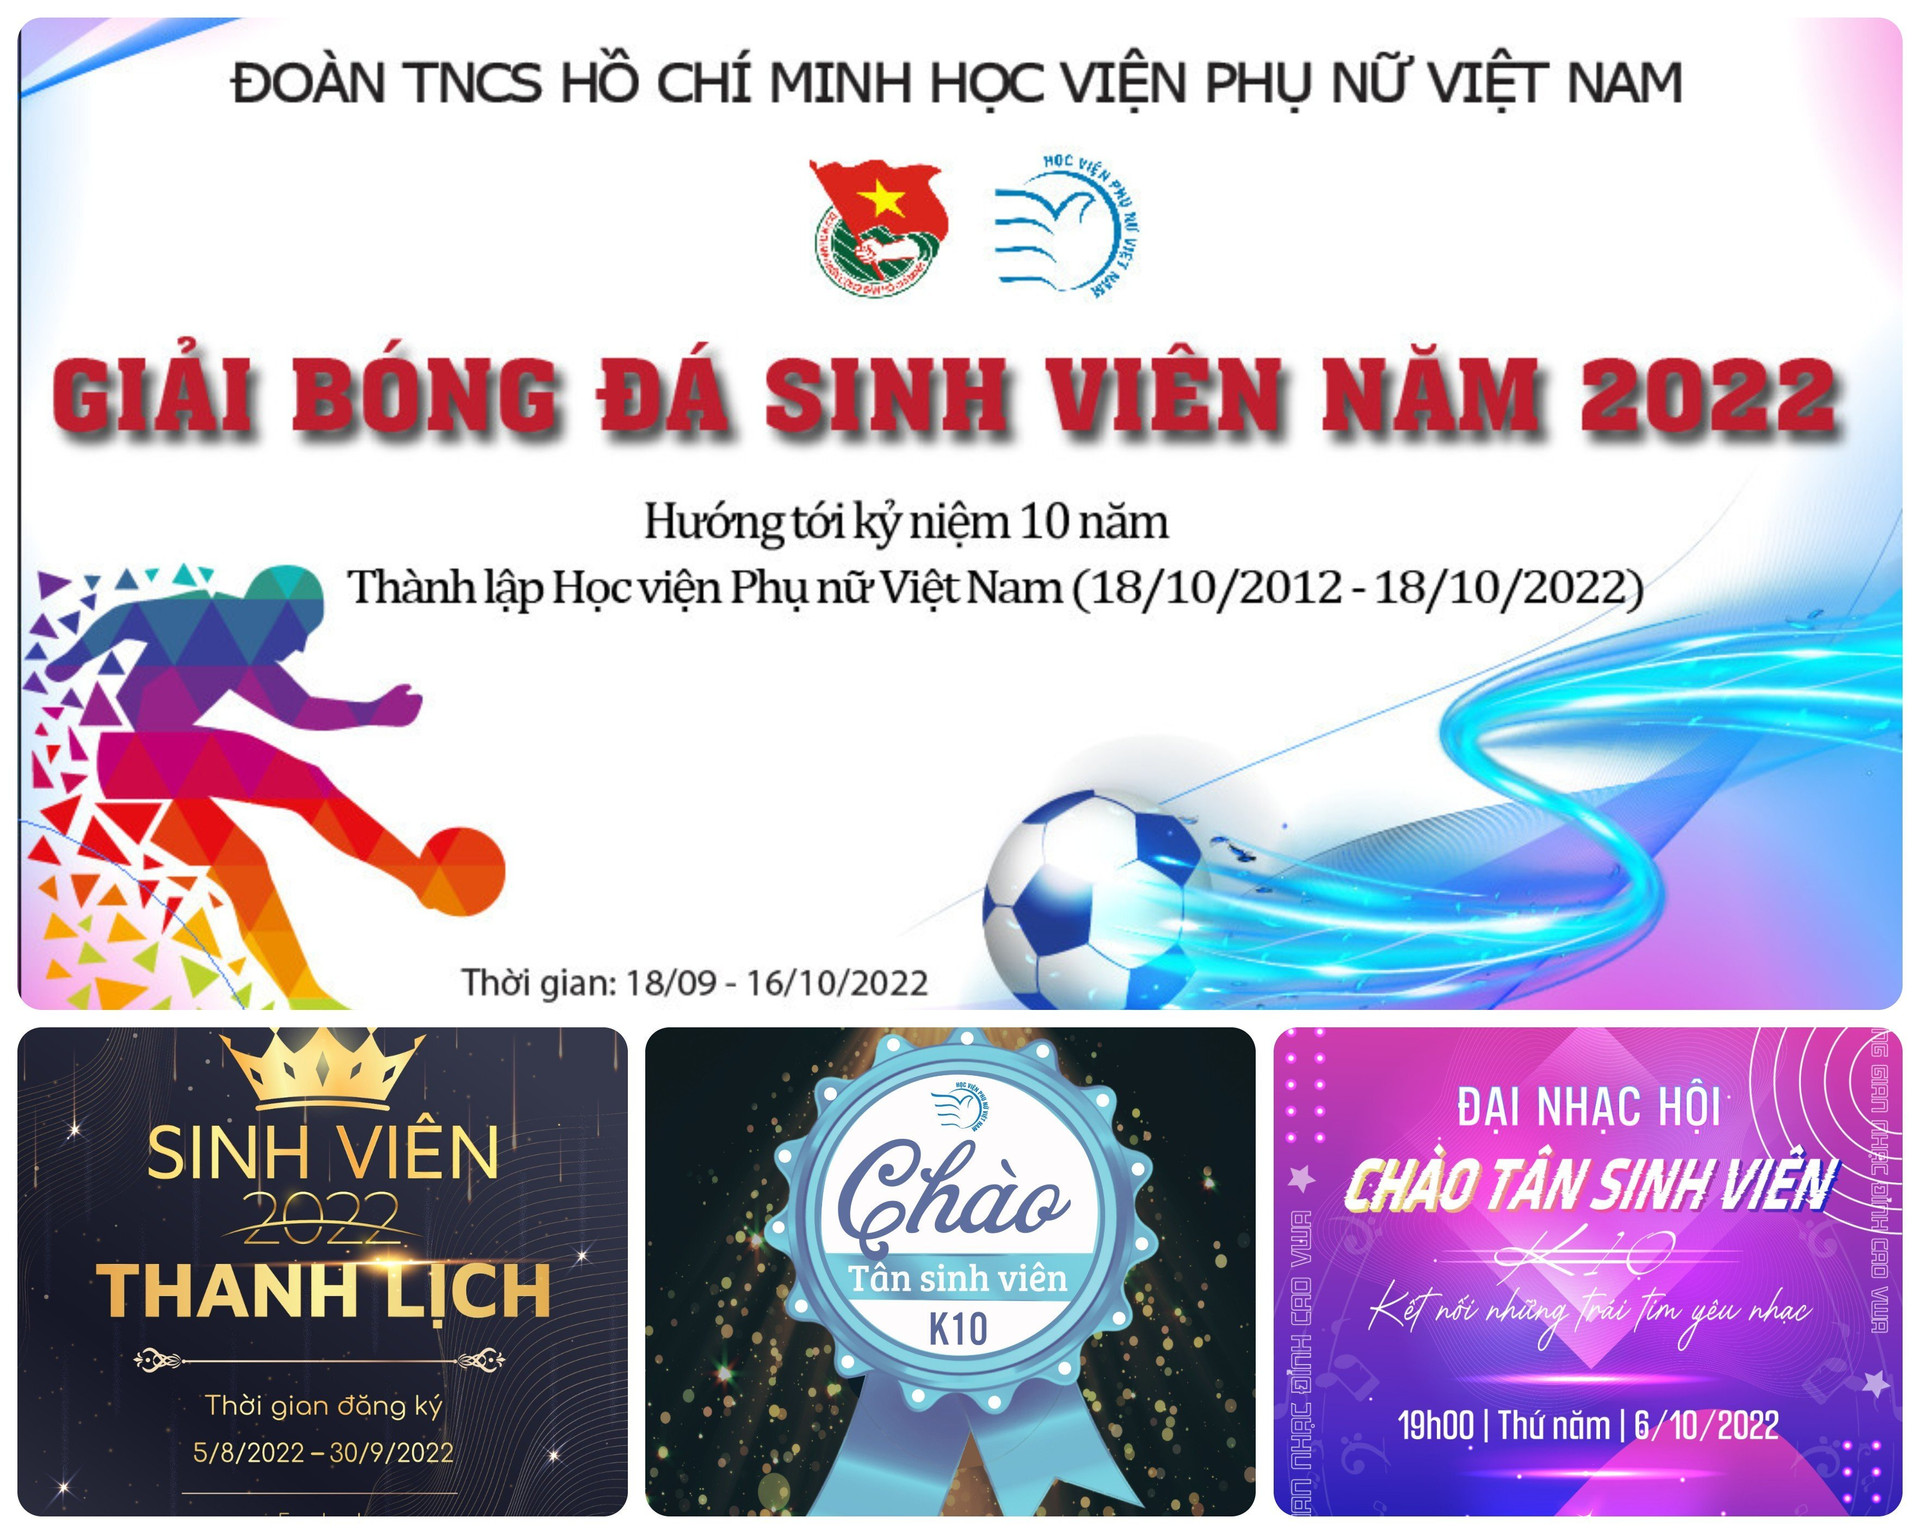 Điểm chuẩn Học viện Phụ nữ Việt Nam cao nhất là 24 điểm - 3